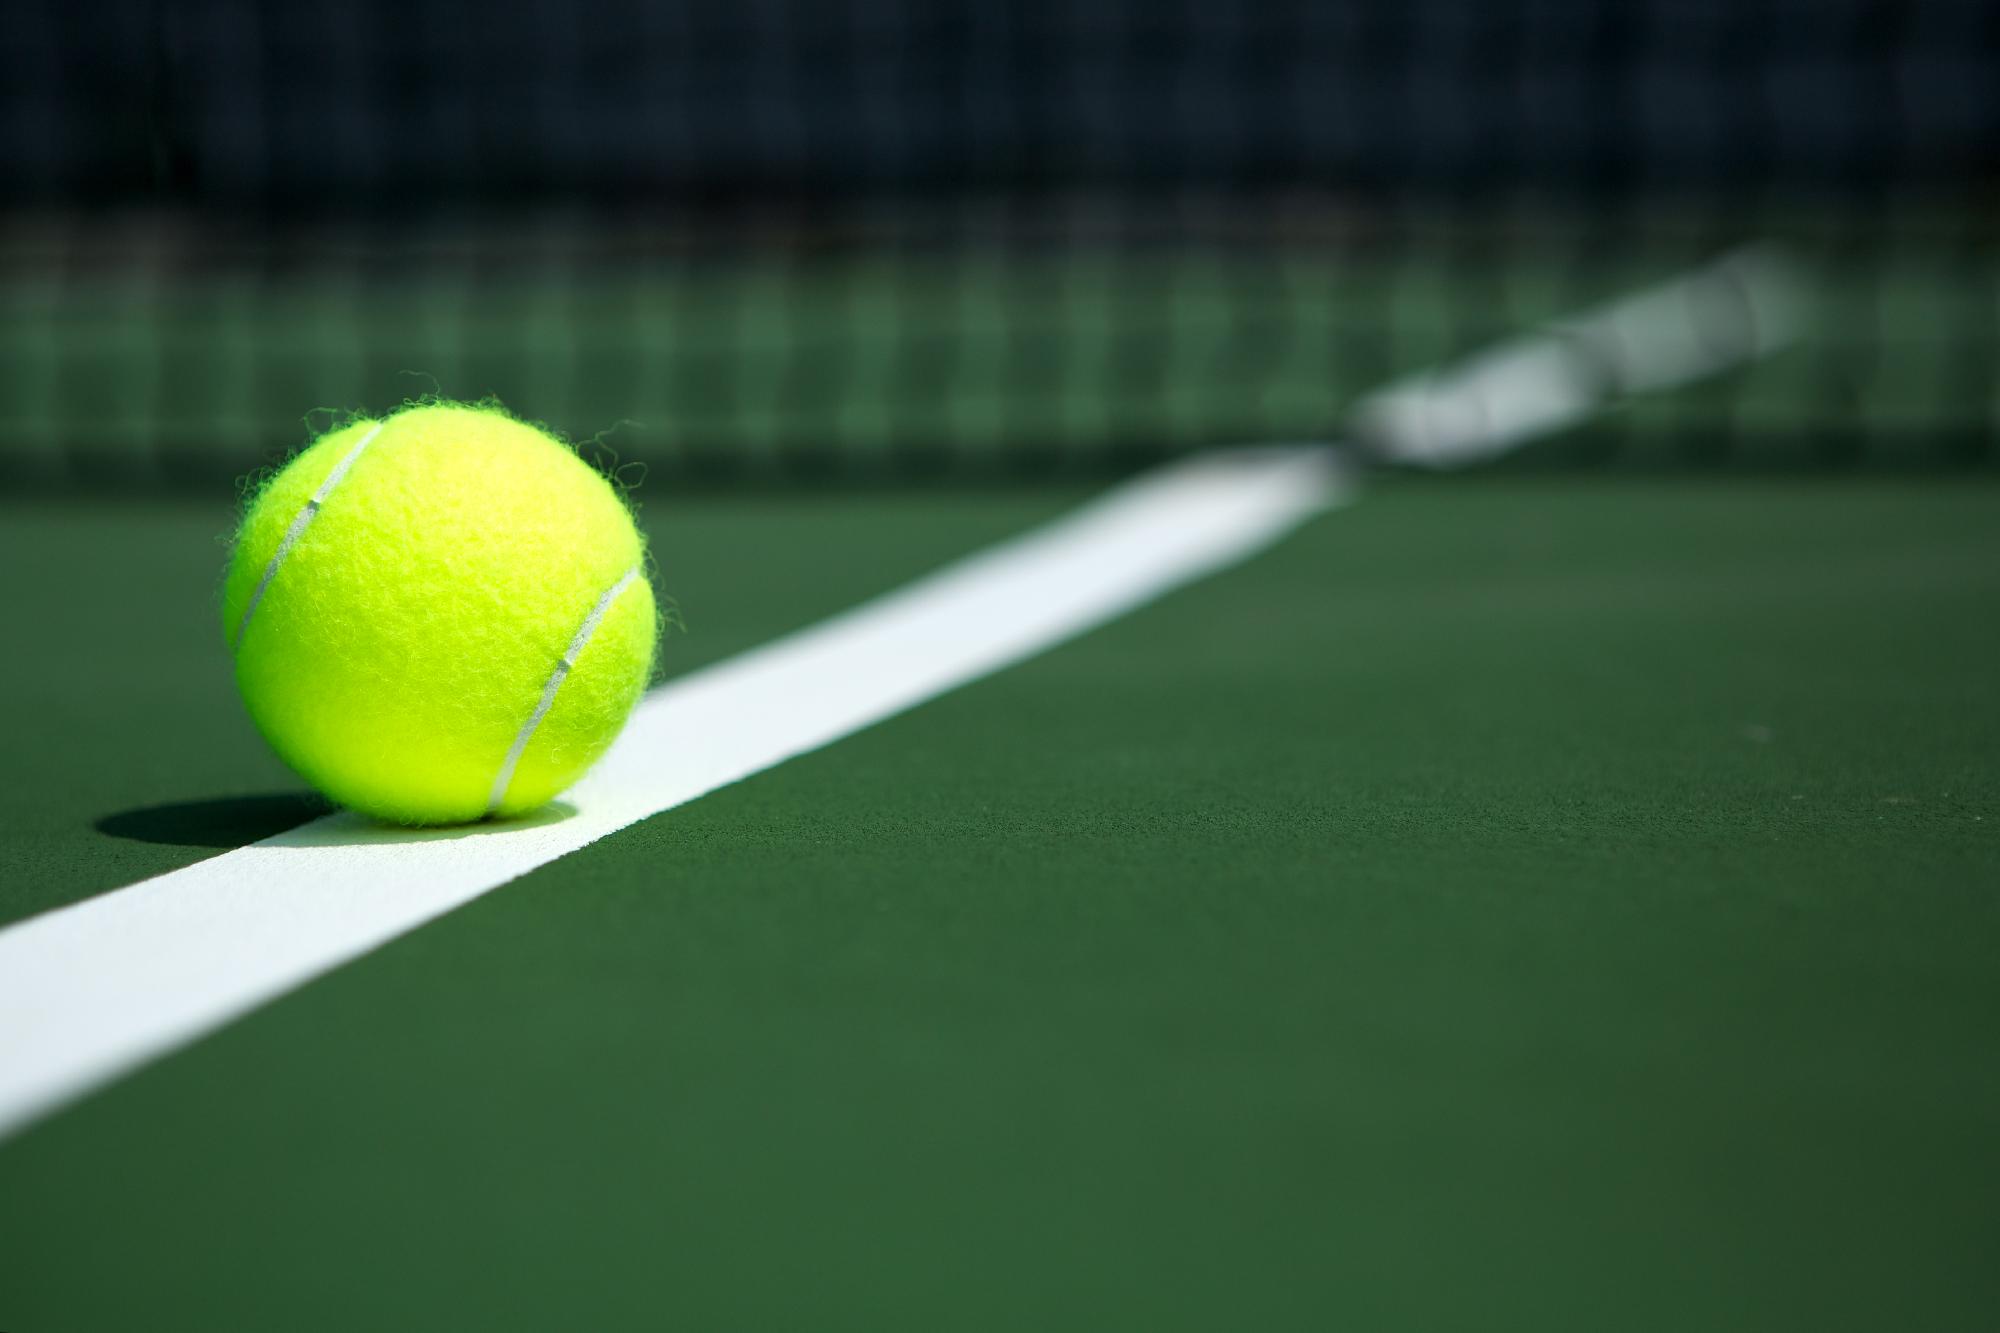 Marozsán, Fucsovics és Piros is javított a tenisz-világranglistán